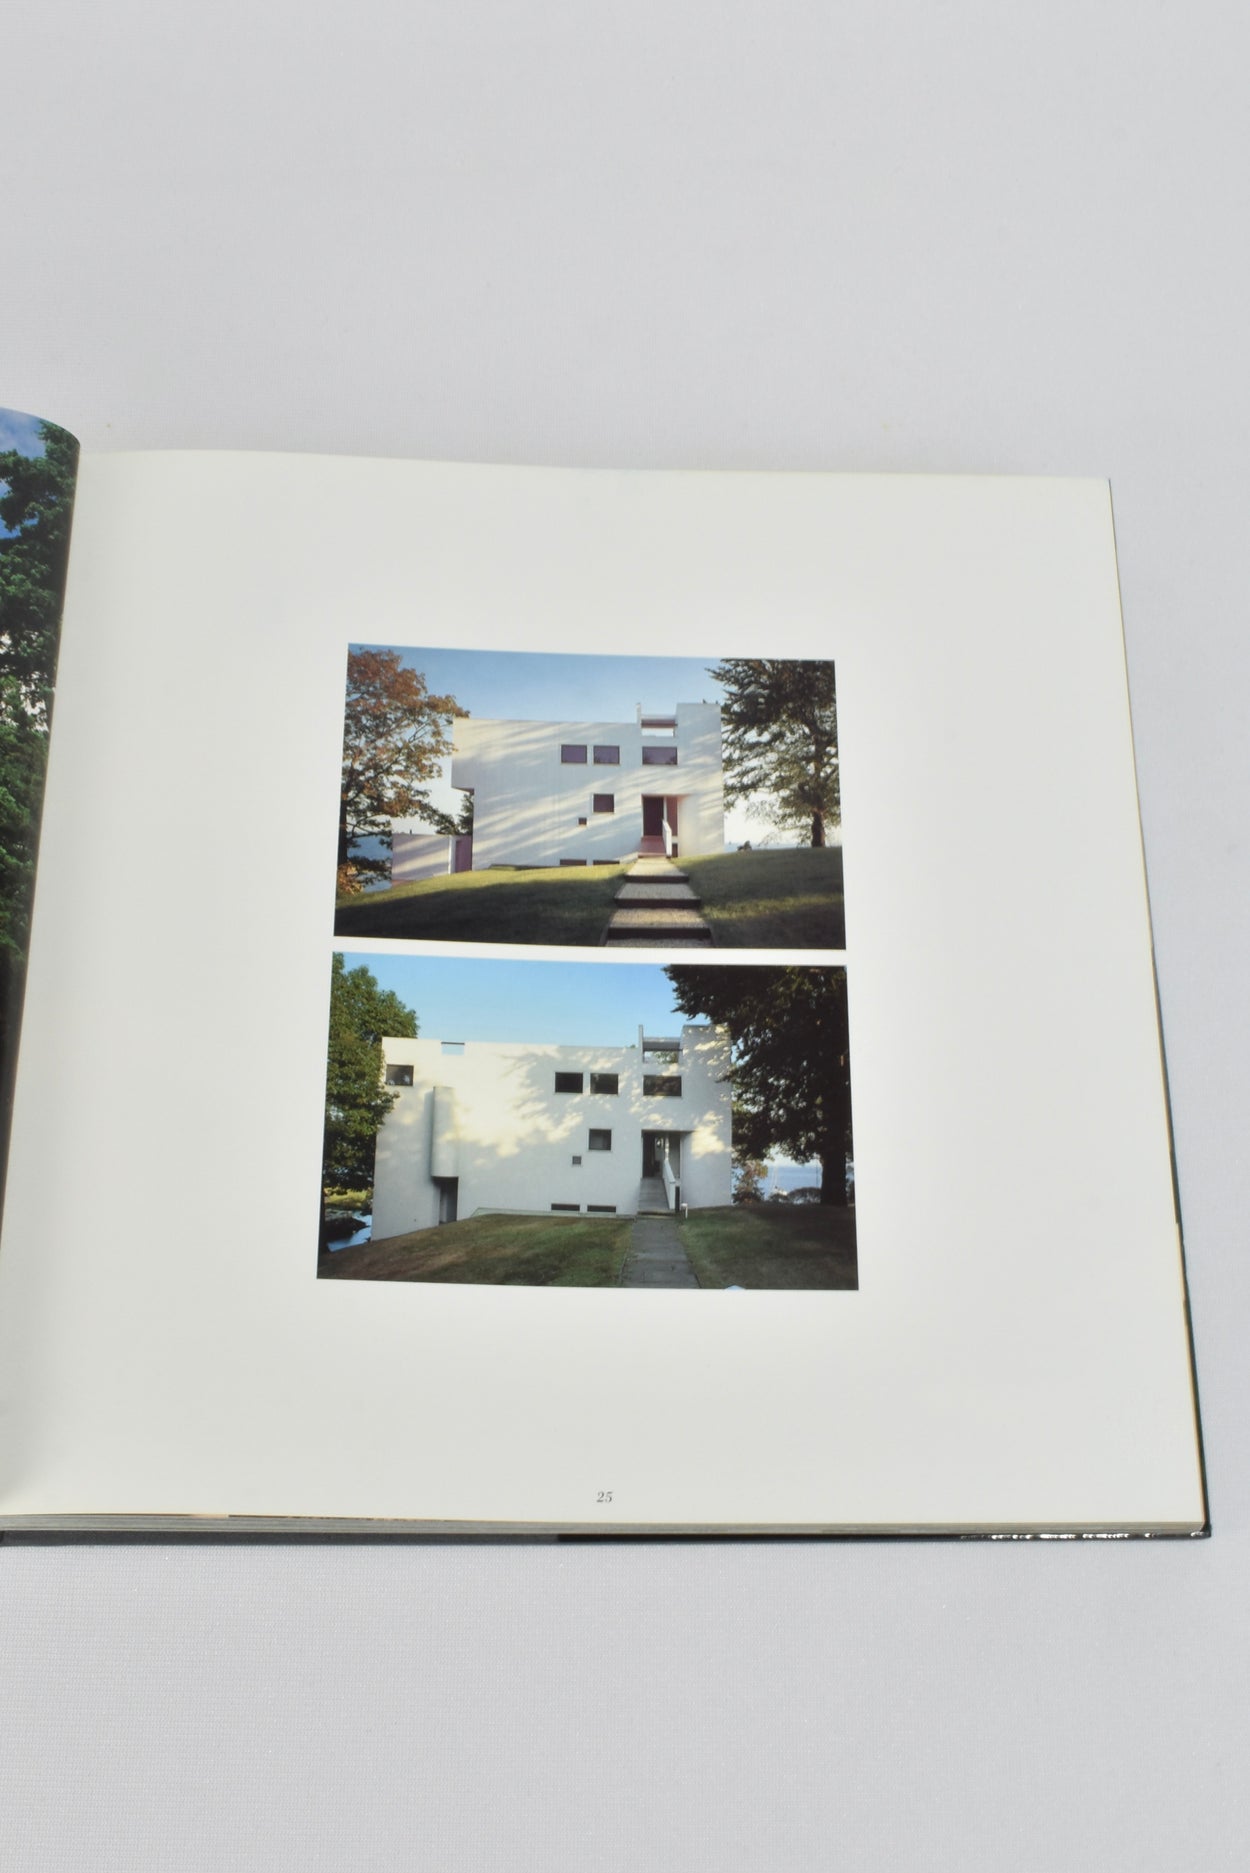 Richard Meier: Houses